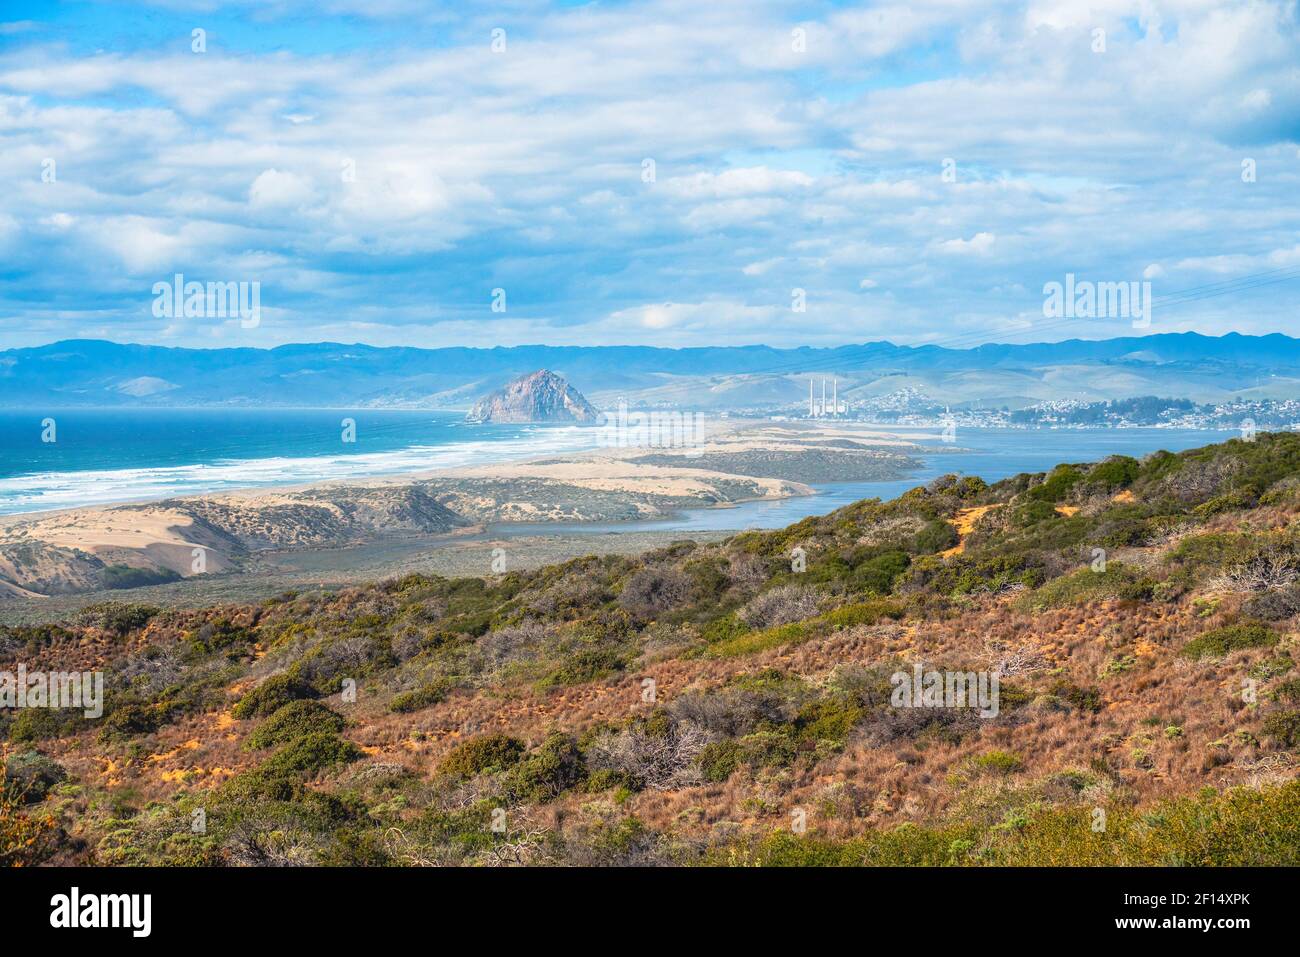 Montana de Oro State Park. Pazifik, Sandstrände, Klippen, Kalifornien Urwald, Silhouette von Morro Rock am Horizont. Beliebte touristische des Stockfoto